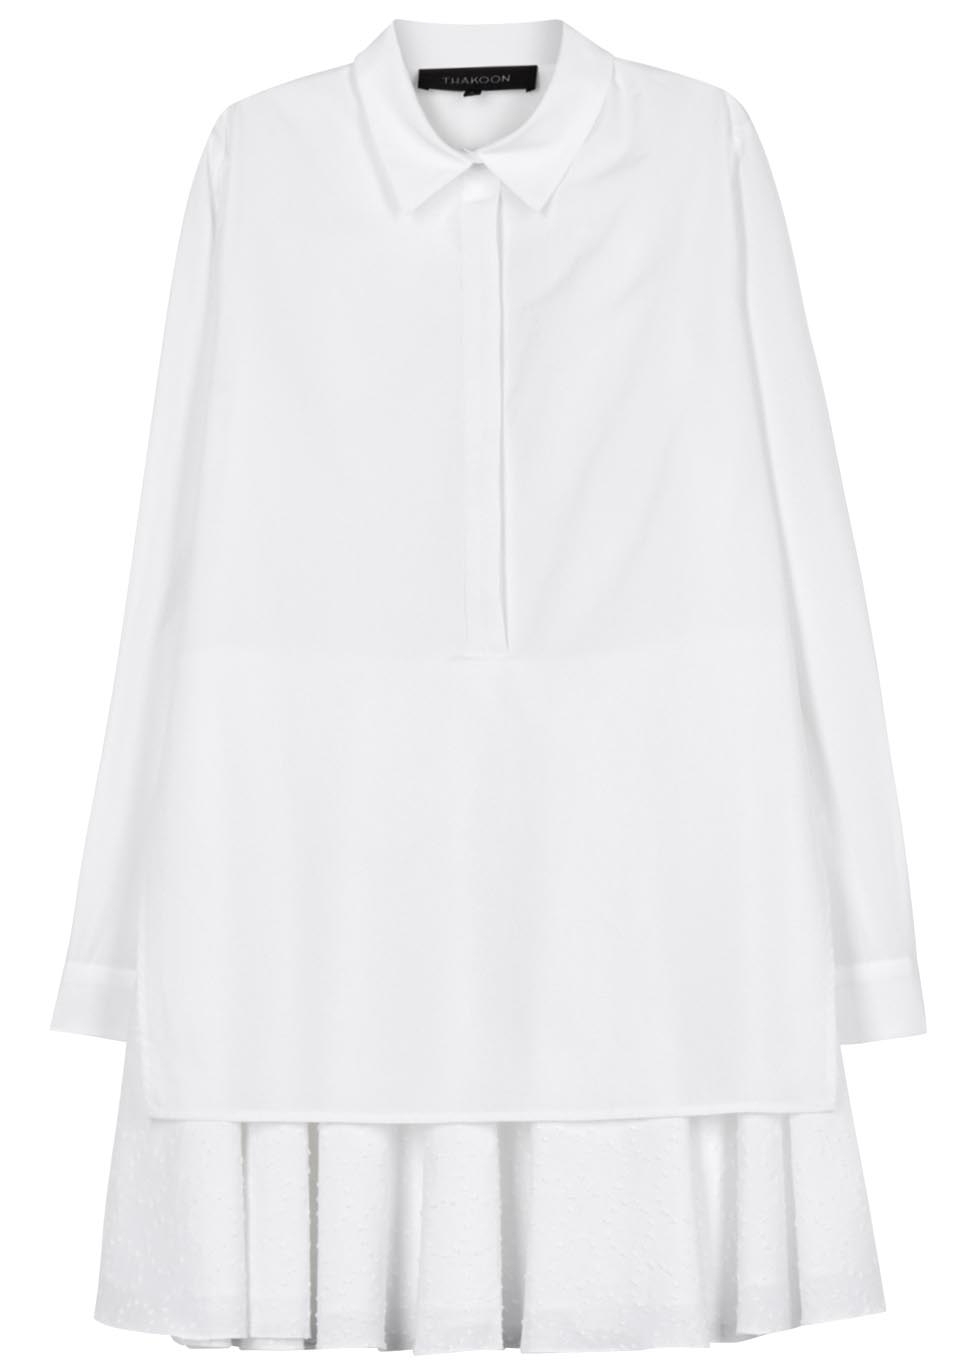 White layered cotton shirt dress